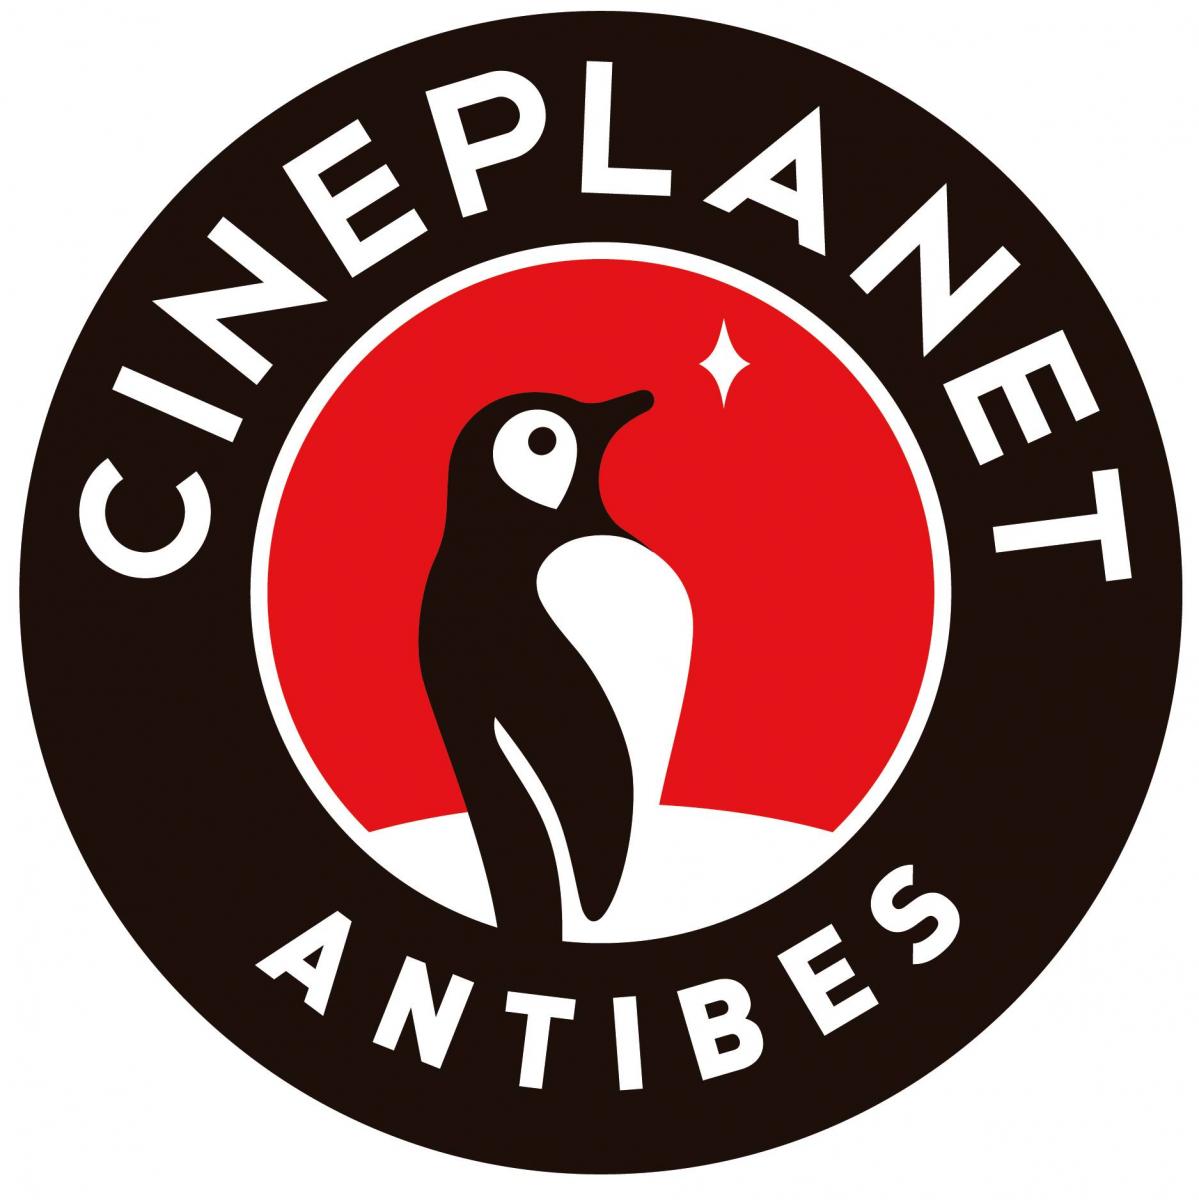 cineplanet-nouveau-cinema-antibes-seances-tarifs-avant-premieres-programme